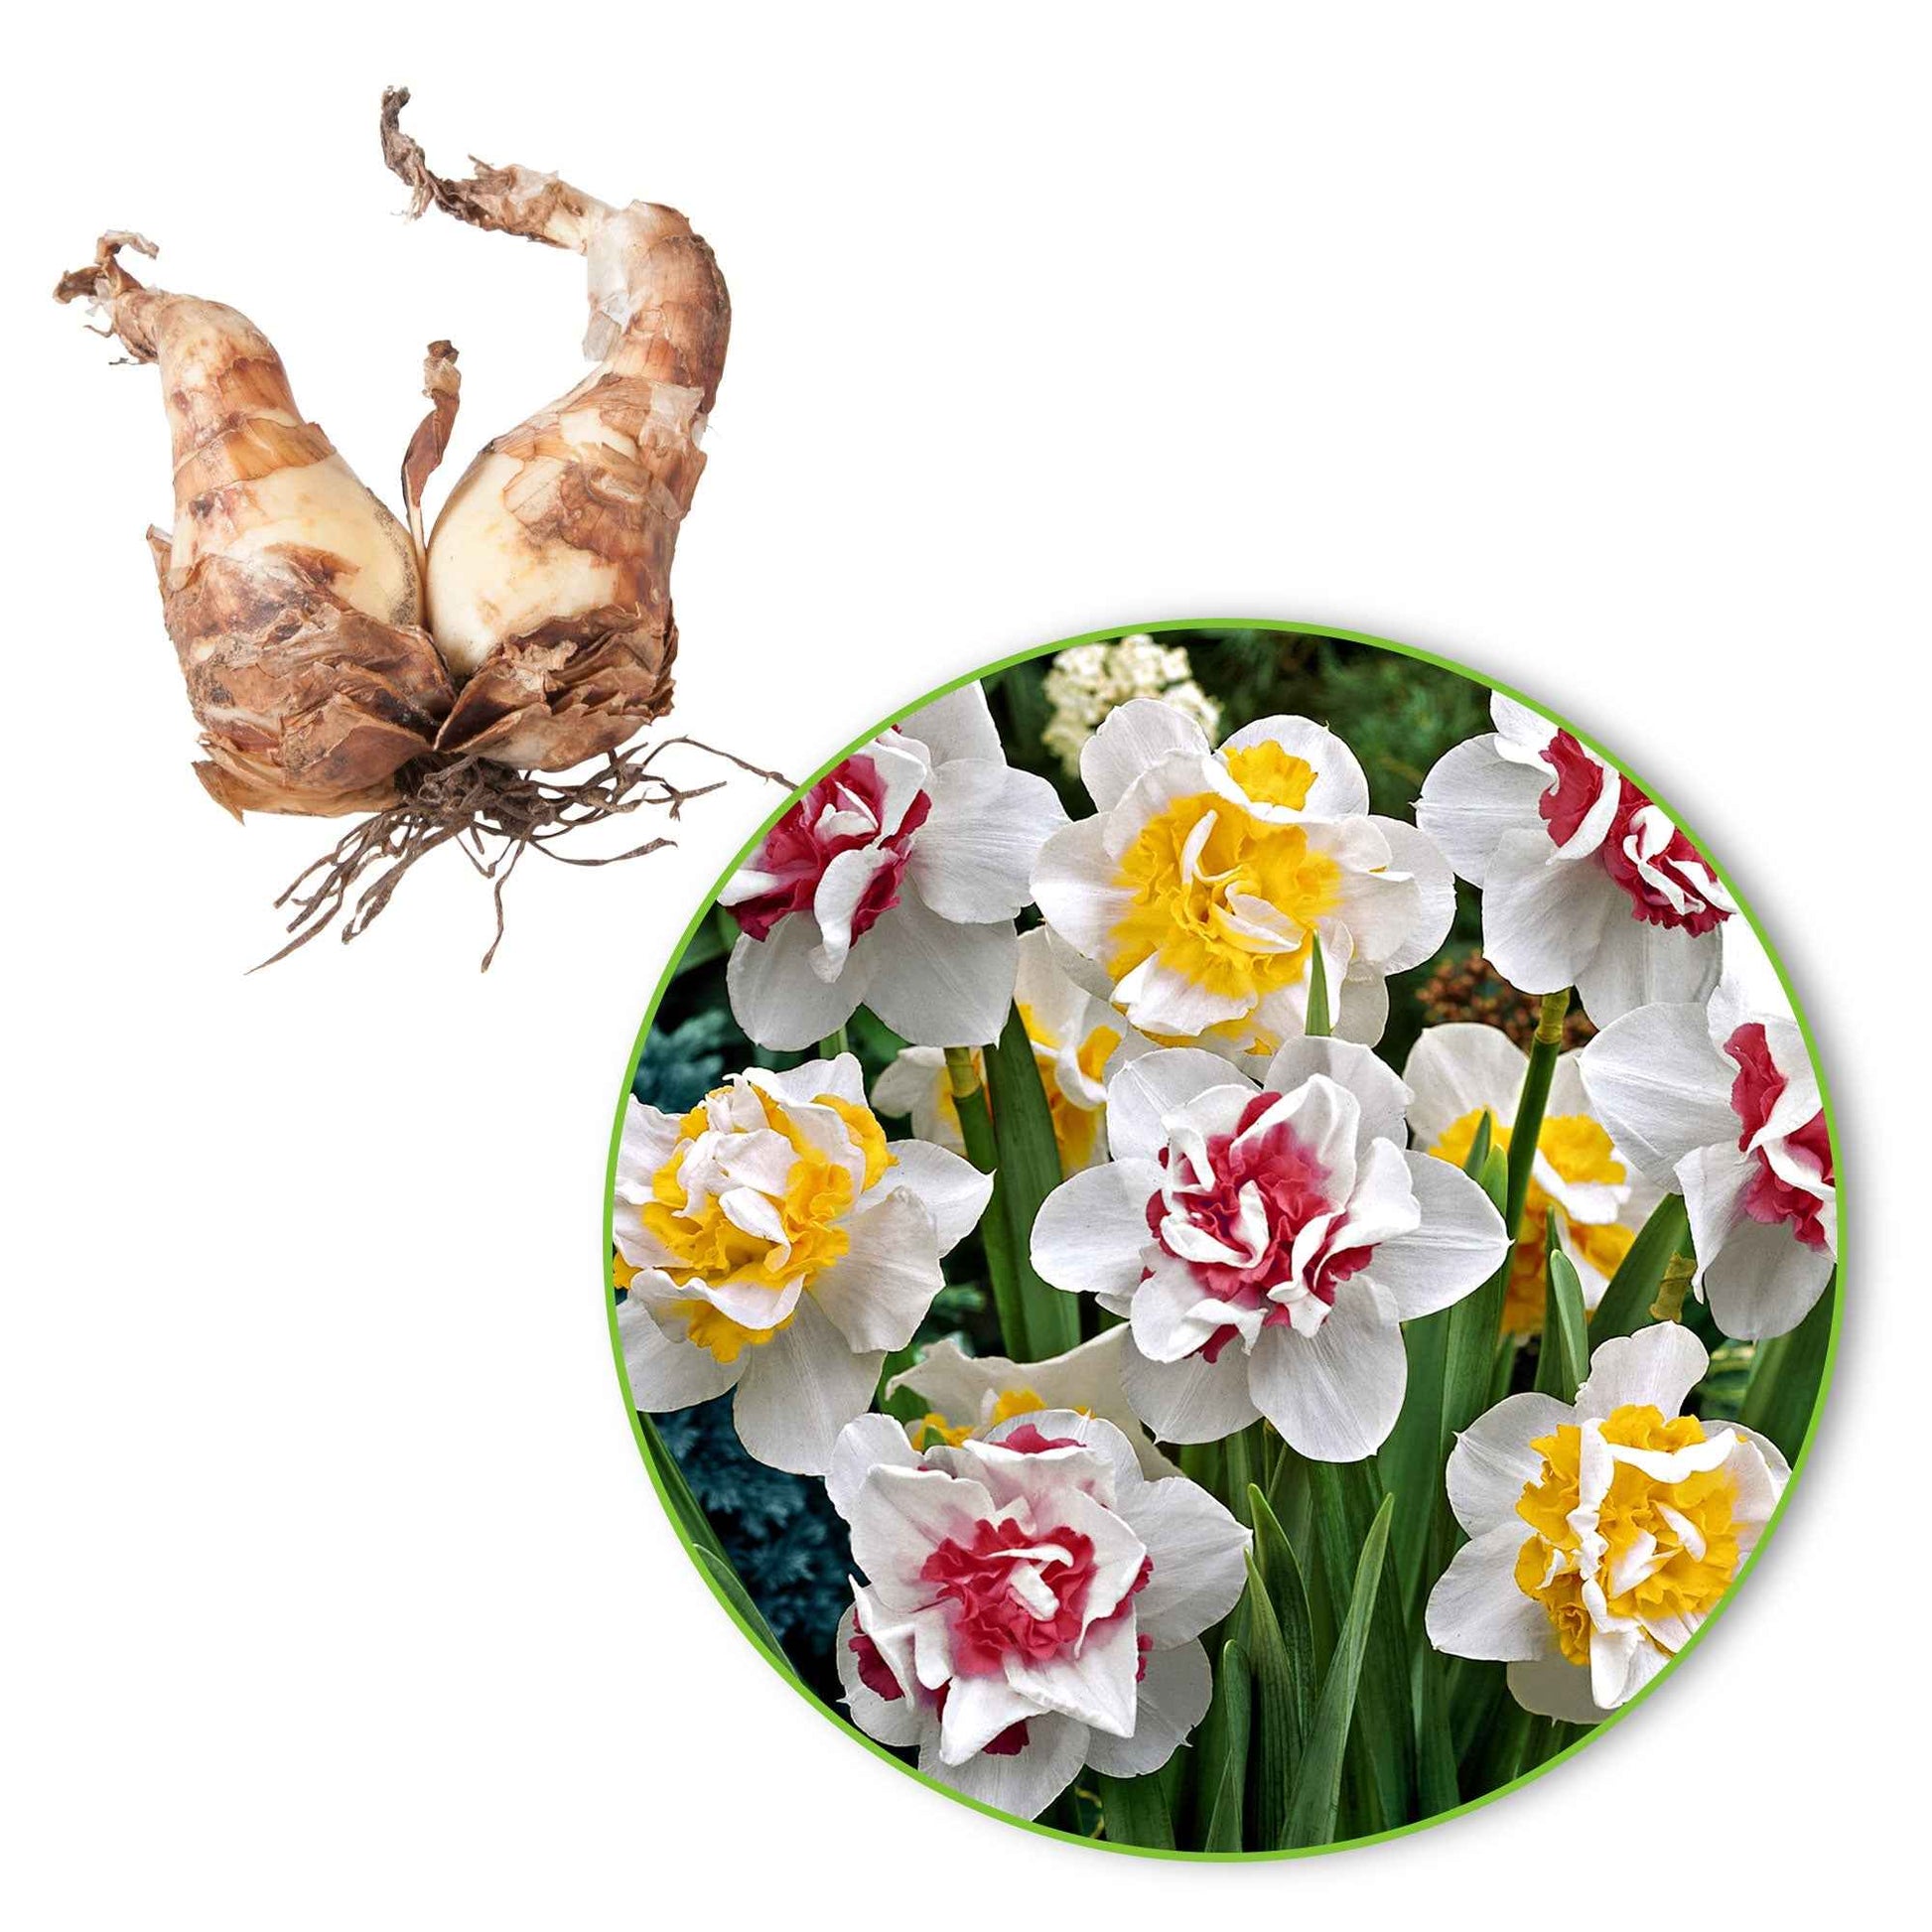 15x Narcisses  Narcissus - Mélange 'Perfect Match' blanc-rose-jaune - Bulbes de printemps